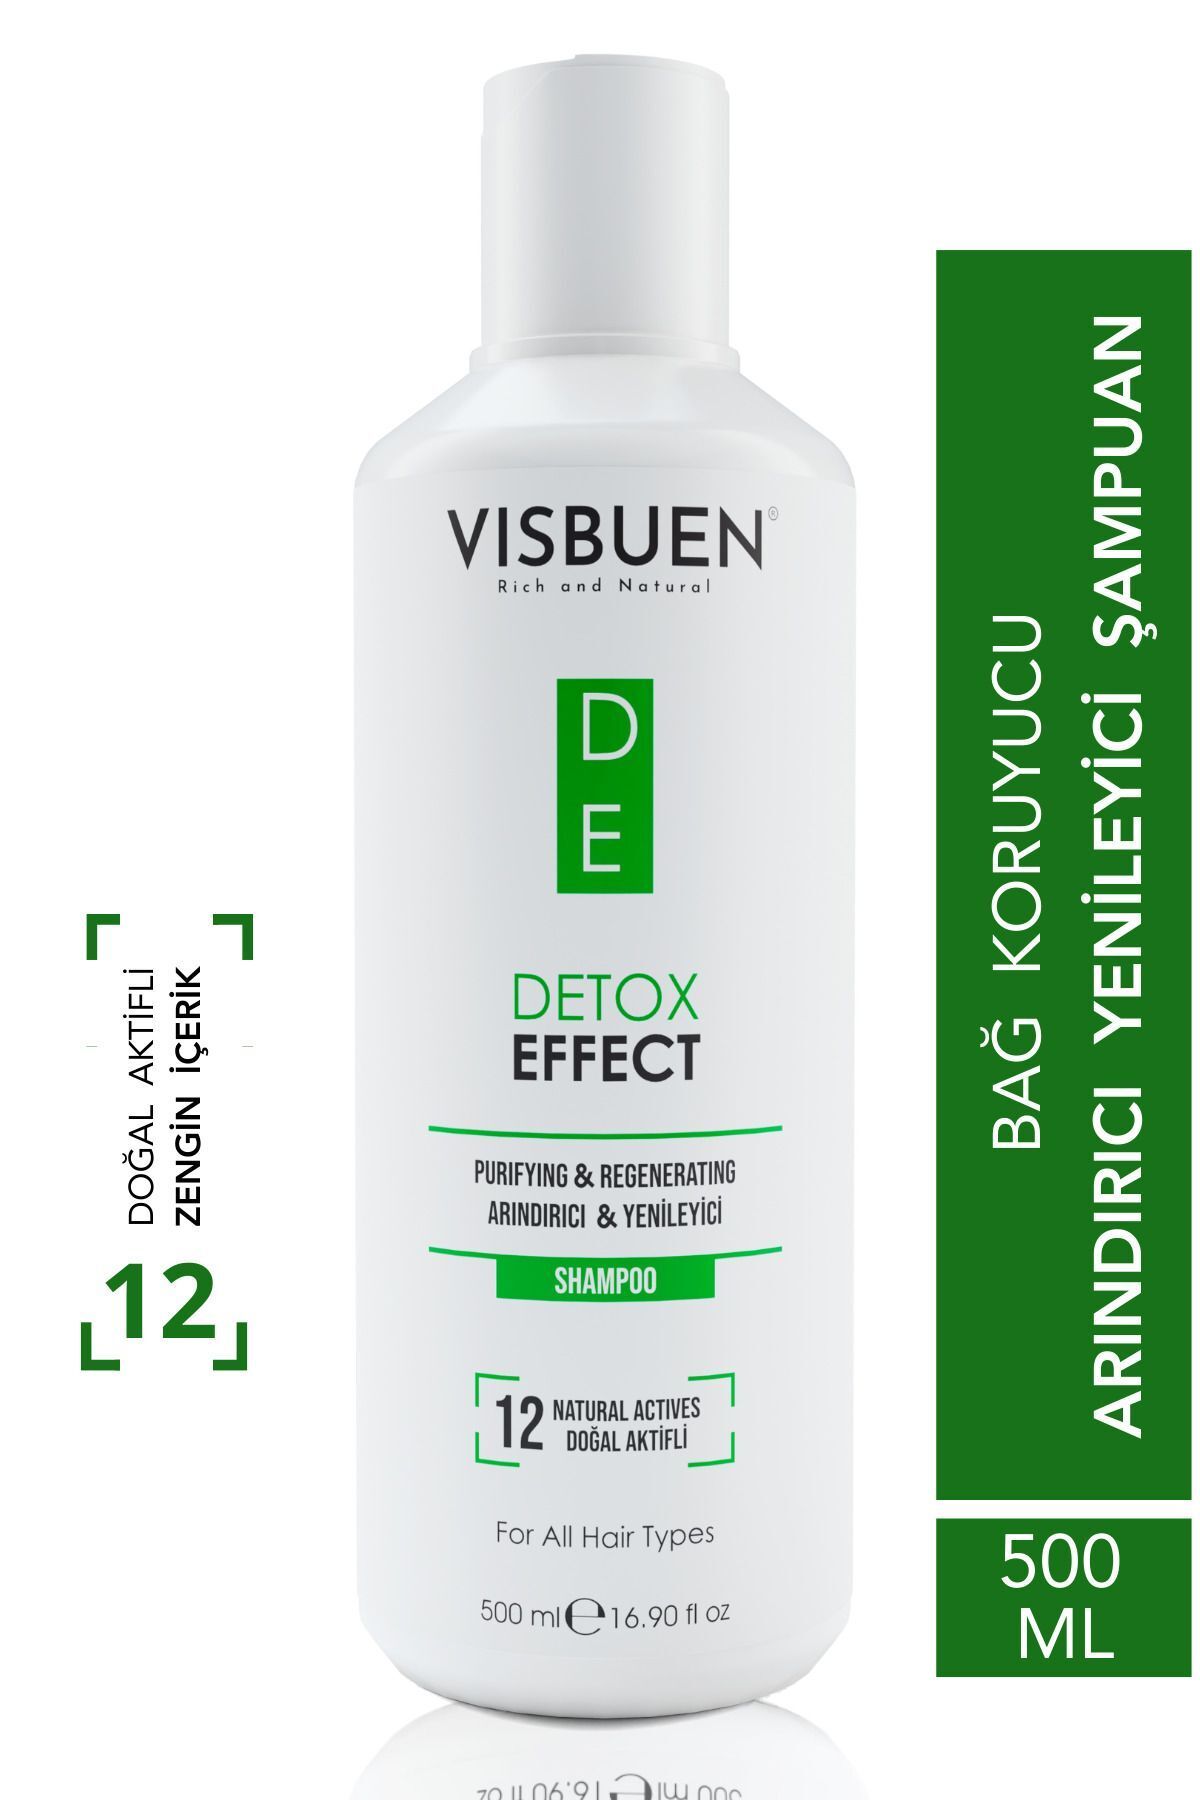 Visbuen Detox Etkili 12 Doğal Aktifli Arındırıcı Onarıcı Ve Işlem Öncesi Sonrası Koruyucu Tuzsuz Şampuan